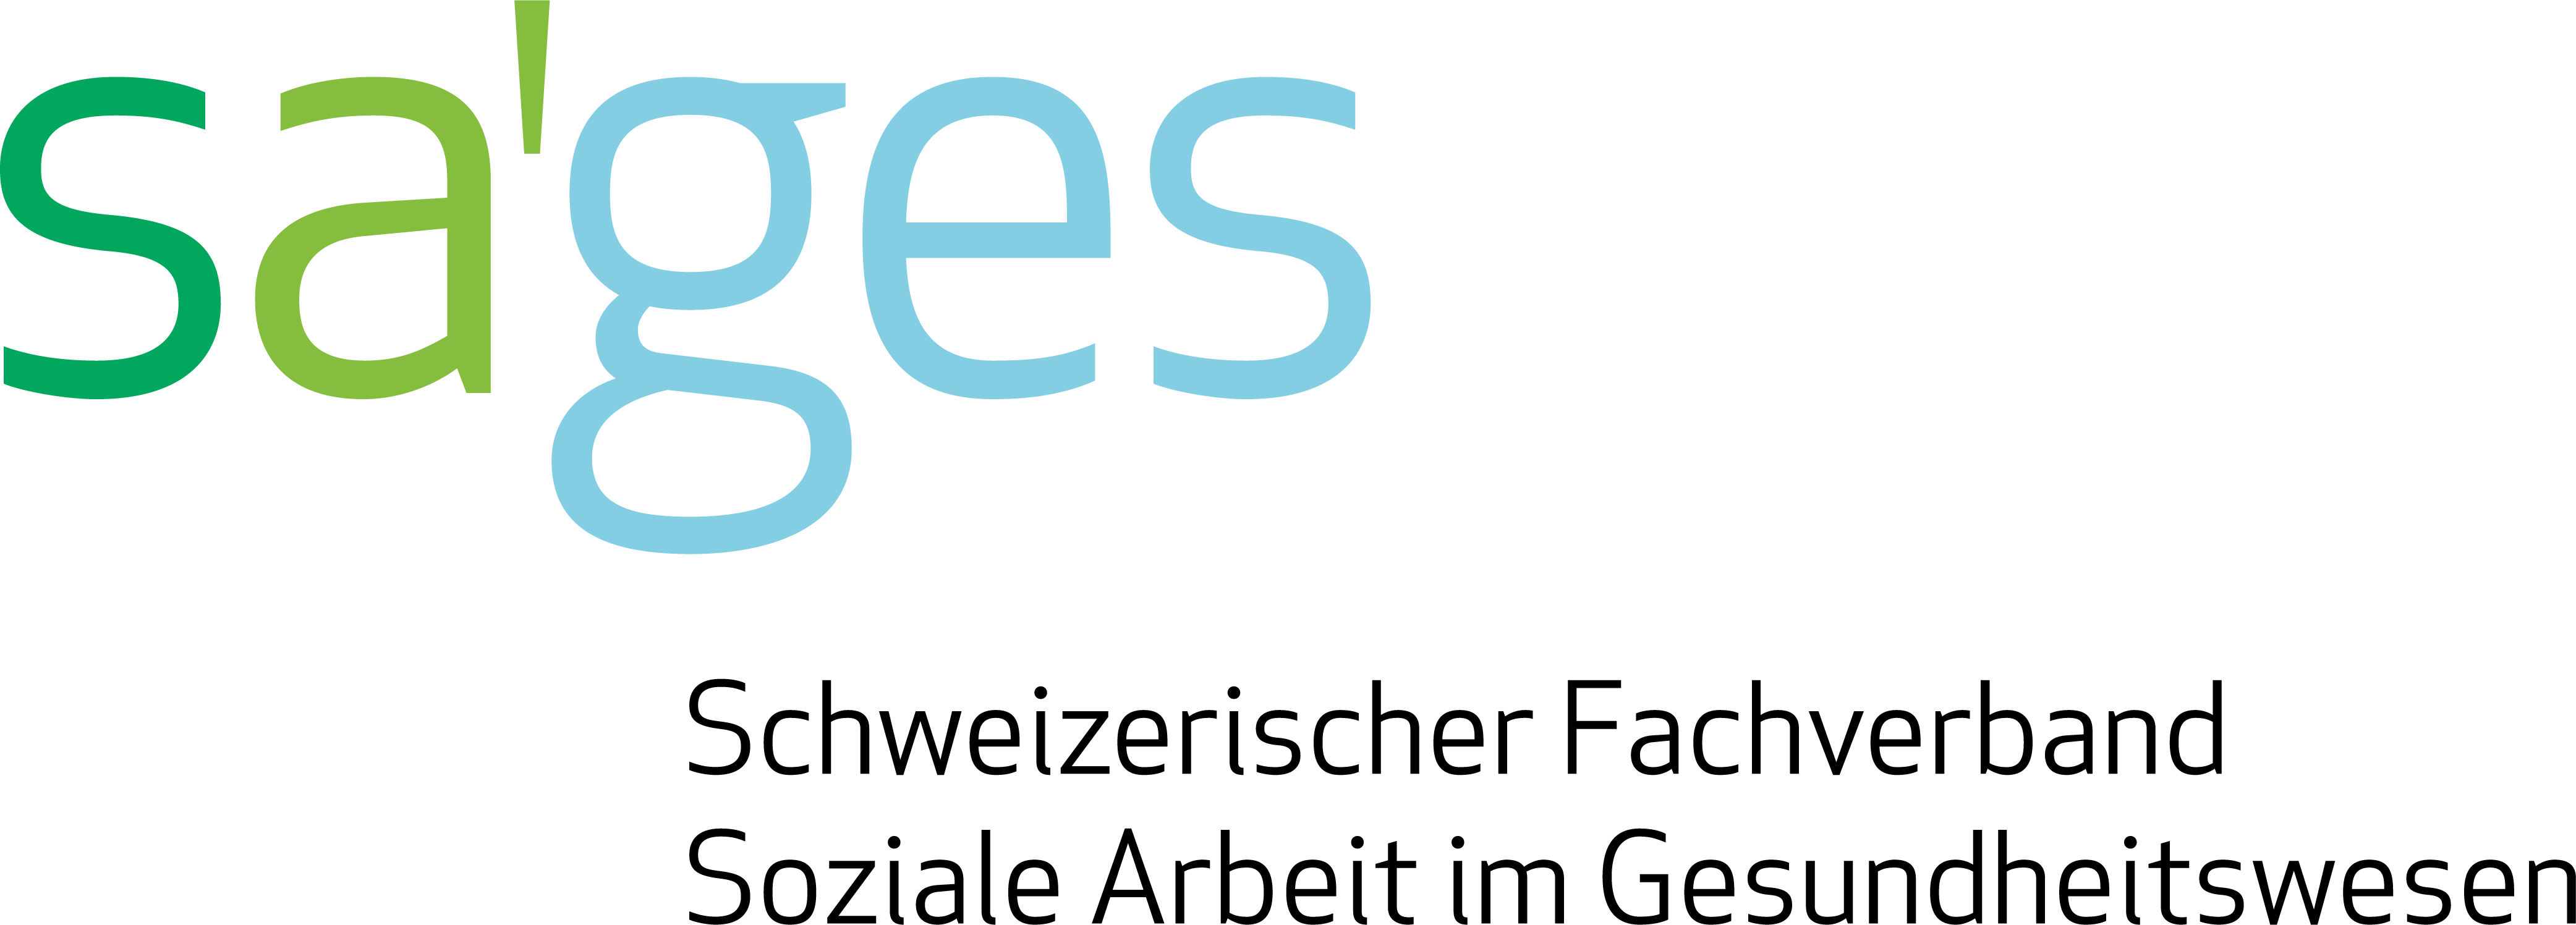 Logo SAGES - Nationale Demenzkonferenz – Public Health Schweiz – Alzheimer Schweiz